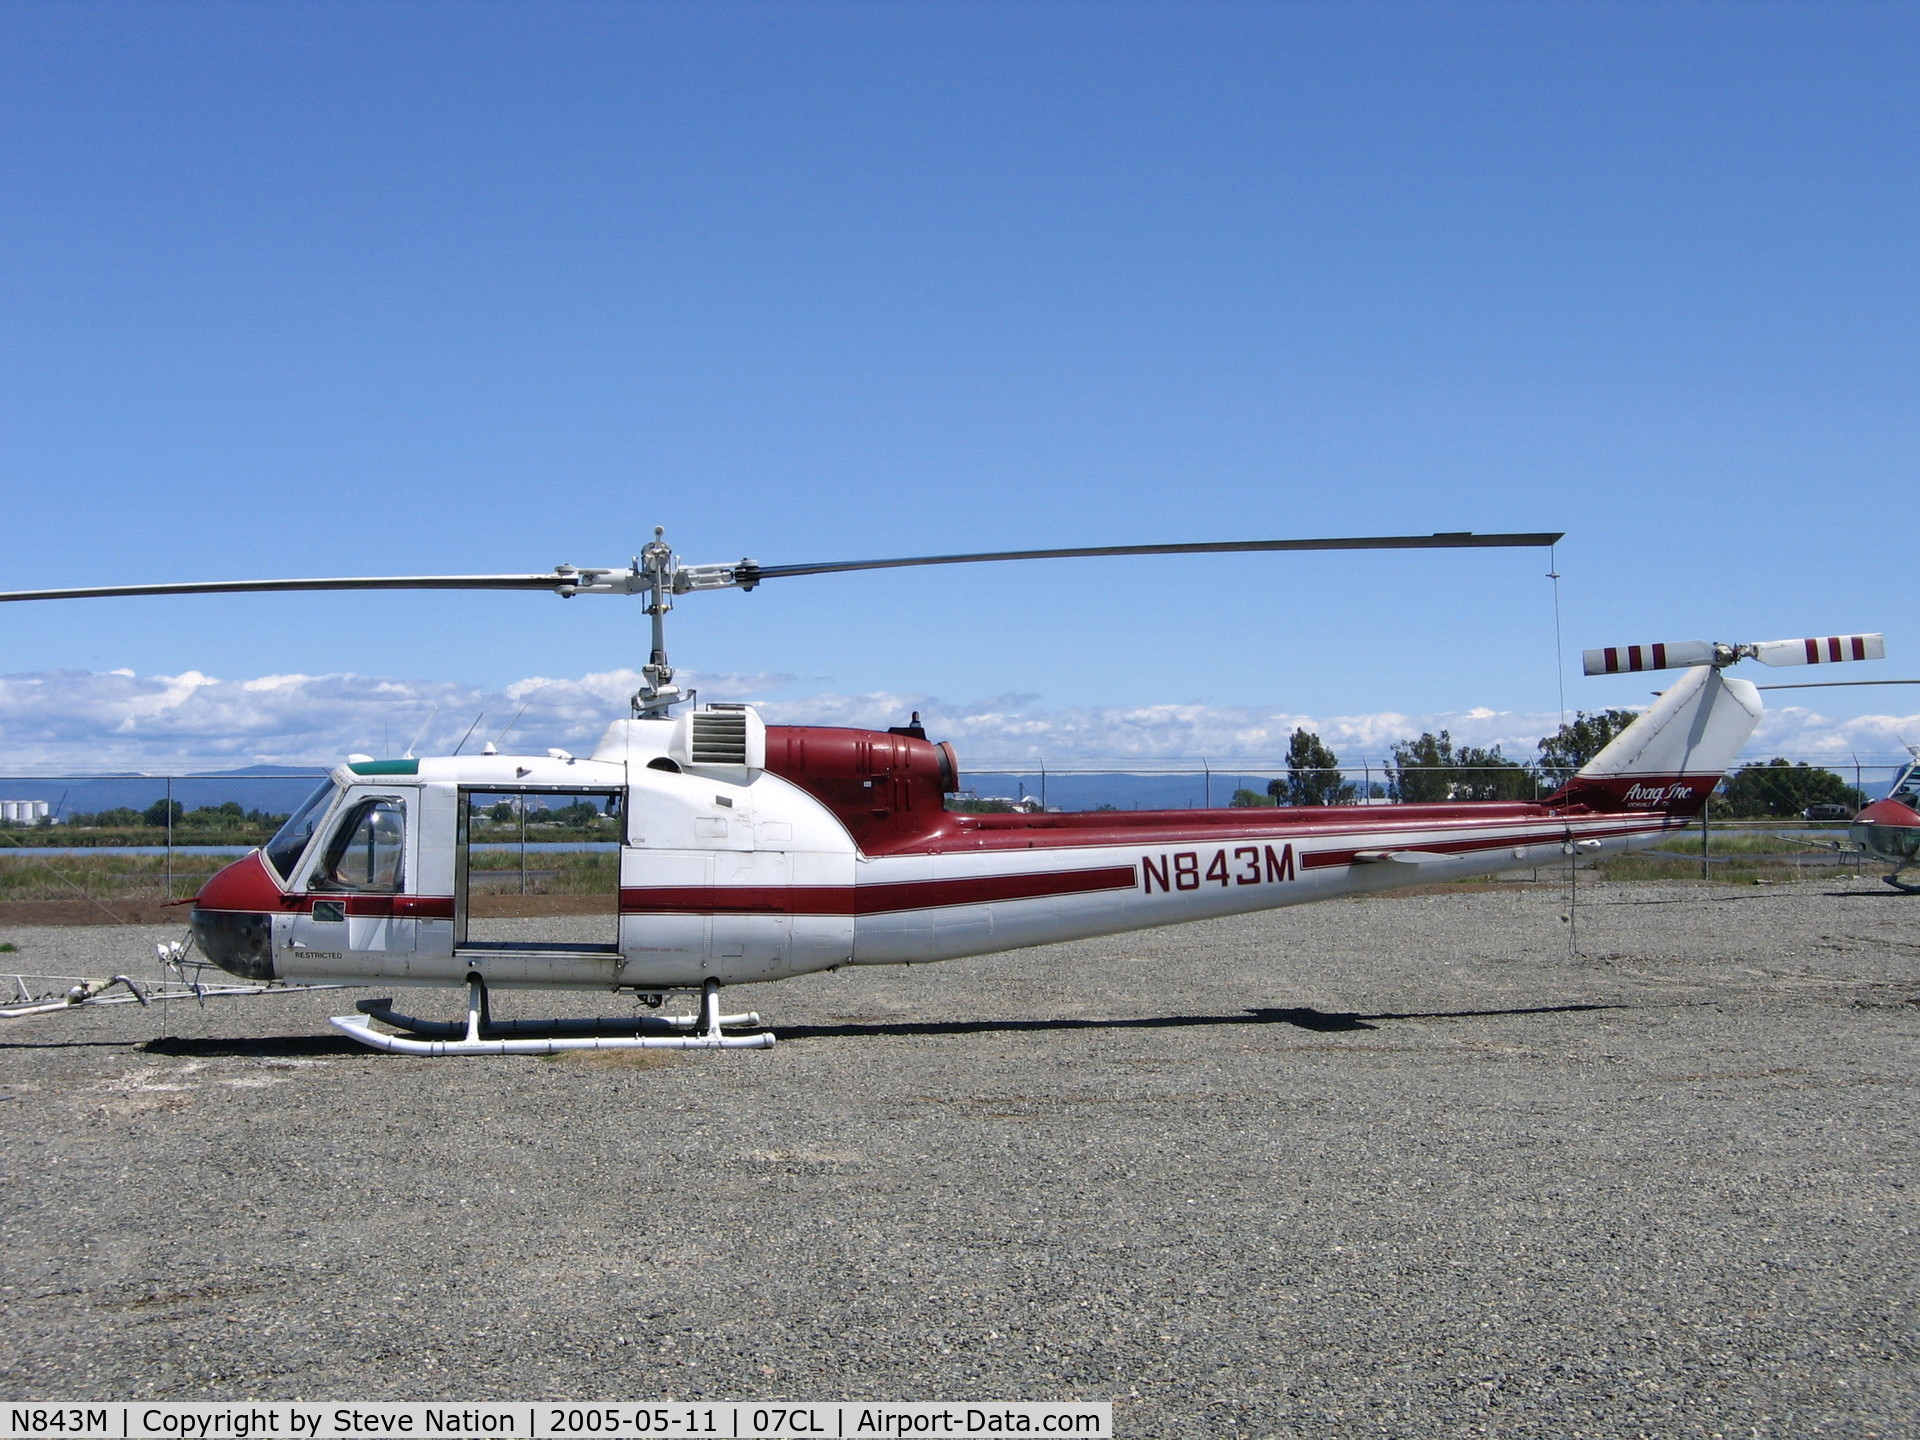 N843M, 1963 Bell UH-1B C/N 63-8676, AVAG 1963 Bell UH-1B used for crop dusting in Sacramento Valley (no spray booms)